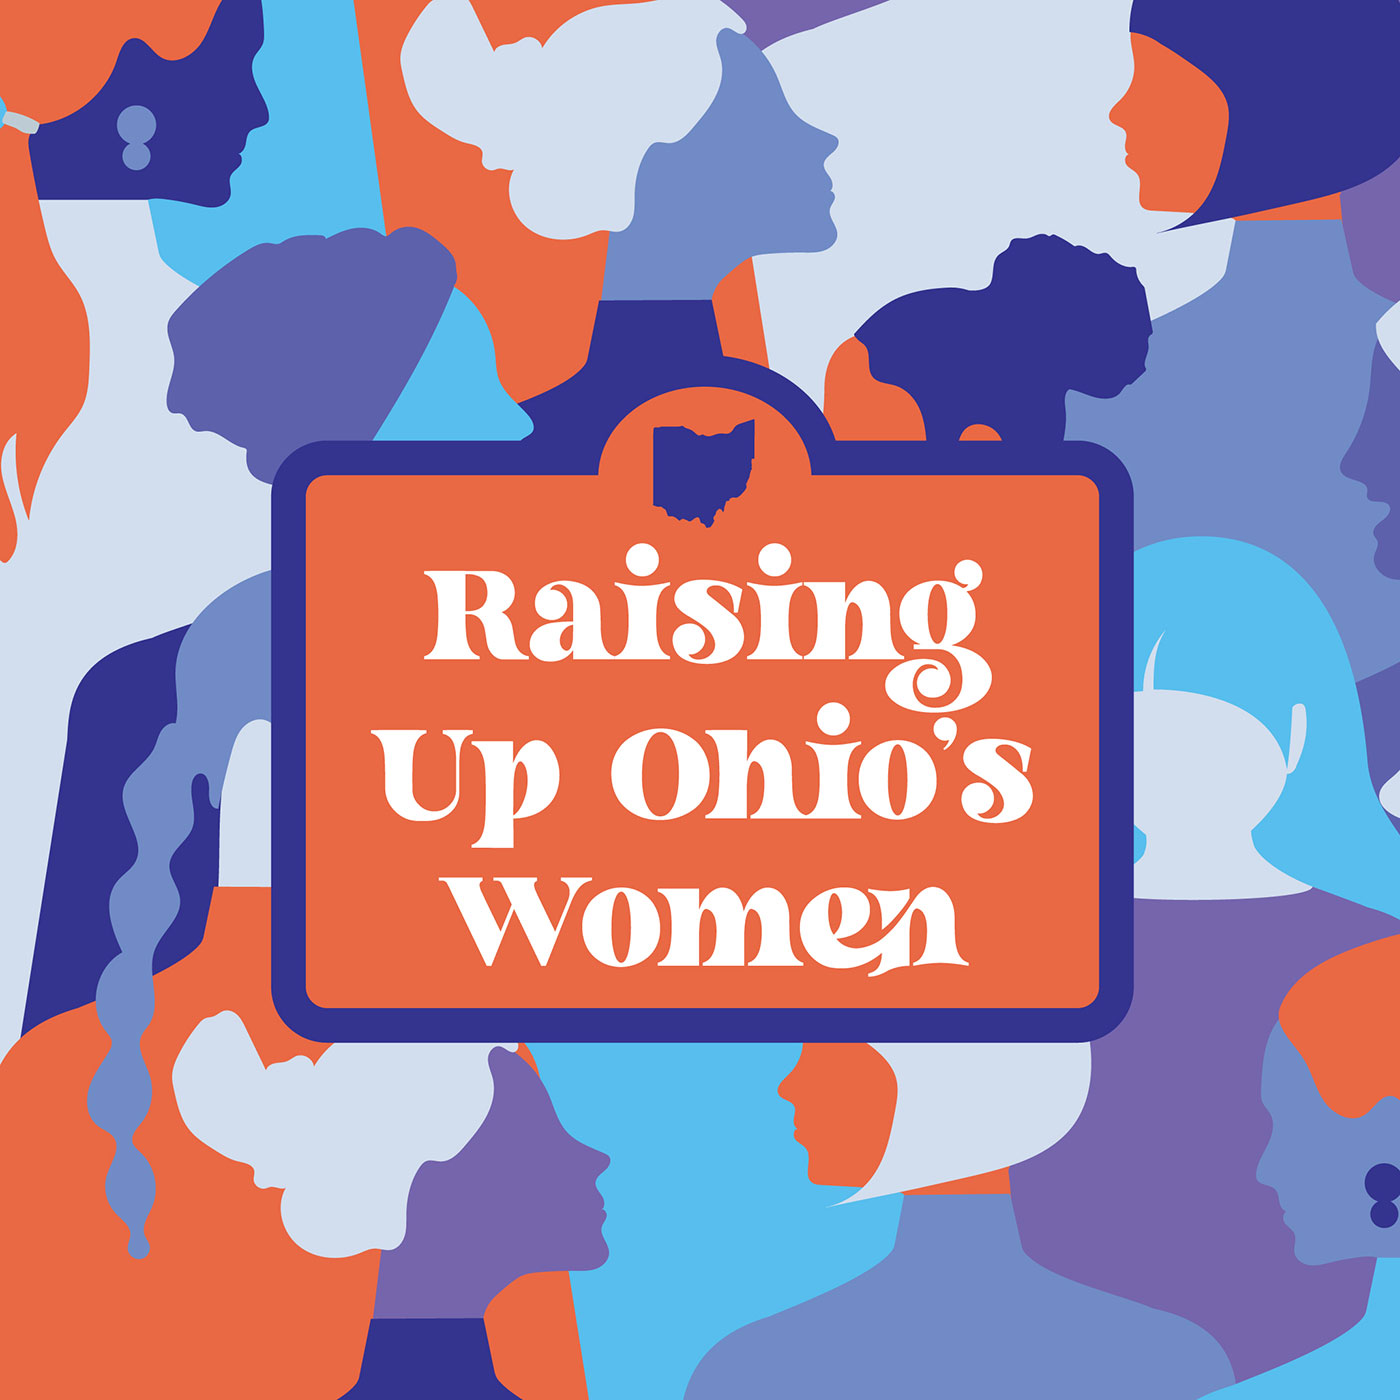 Raising Up Ohio's Women